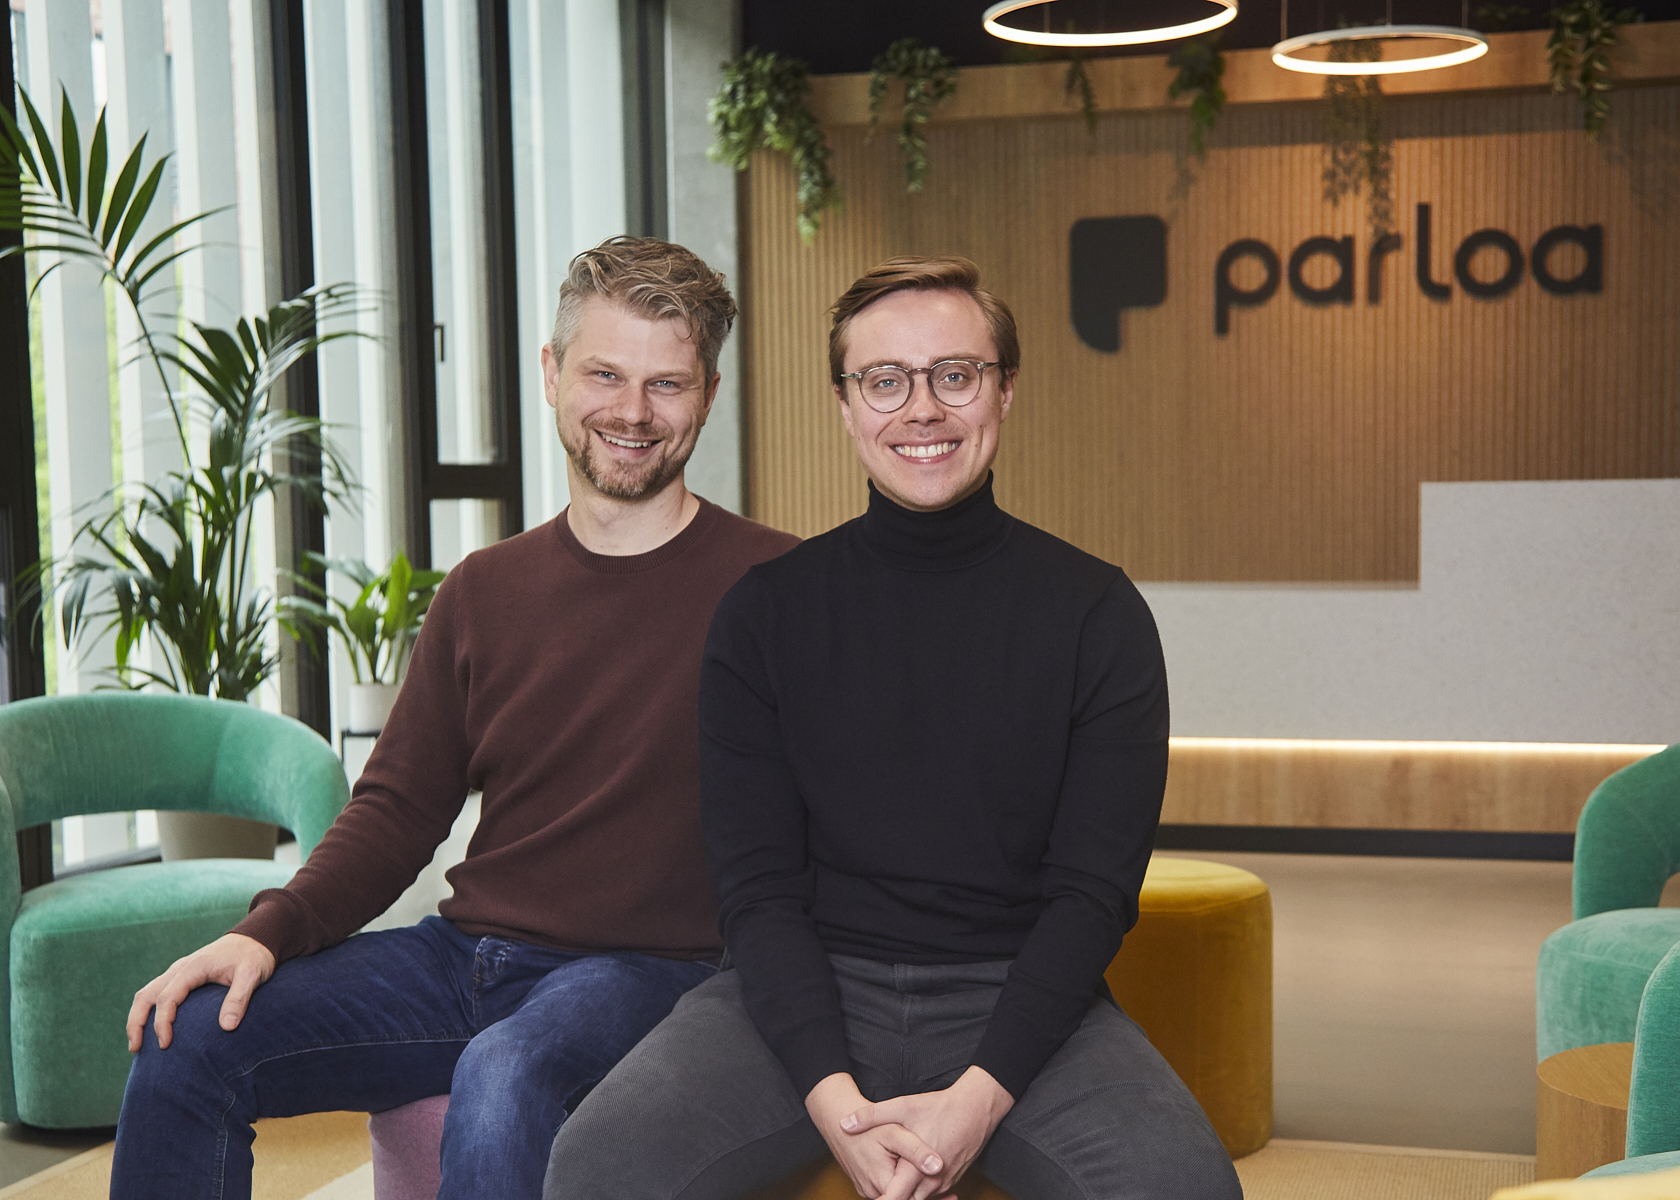 2024-Parloa-founders-Stefan-Ostwald-Malte-Kosub_1.jpg